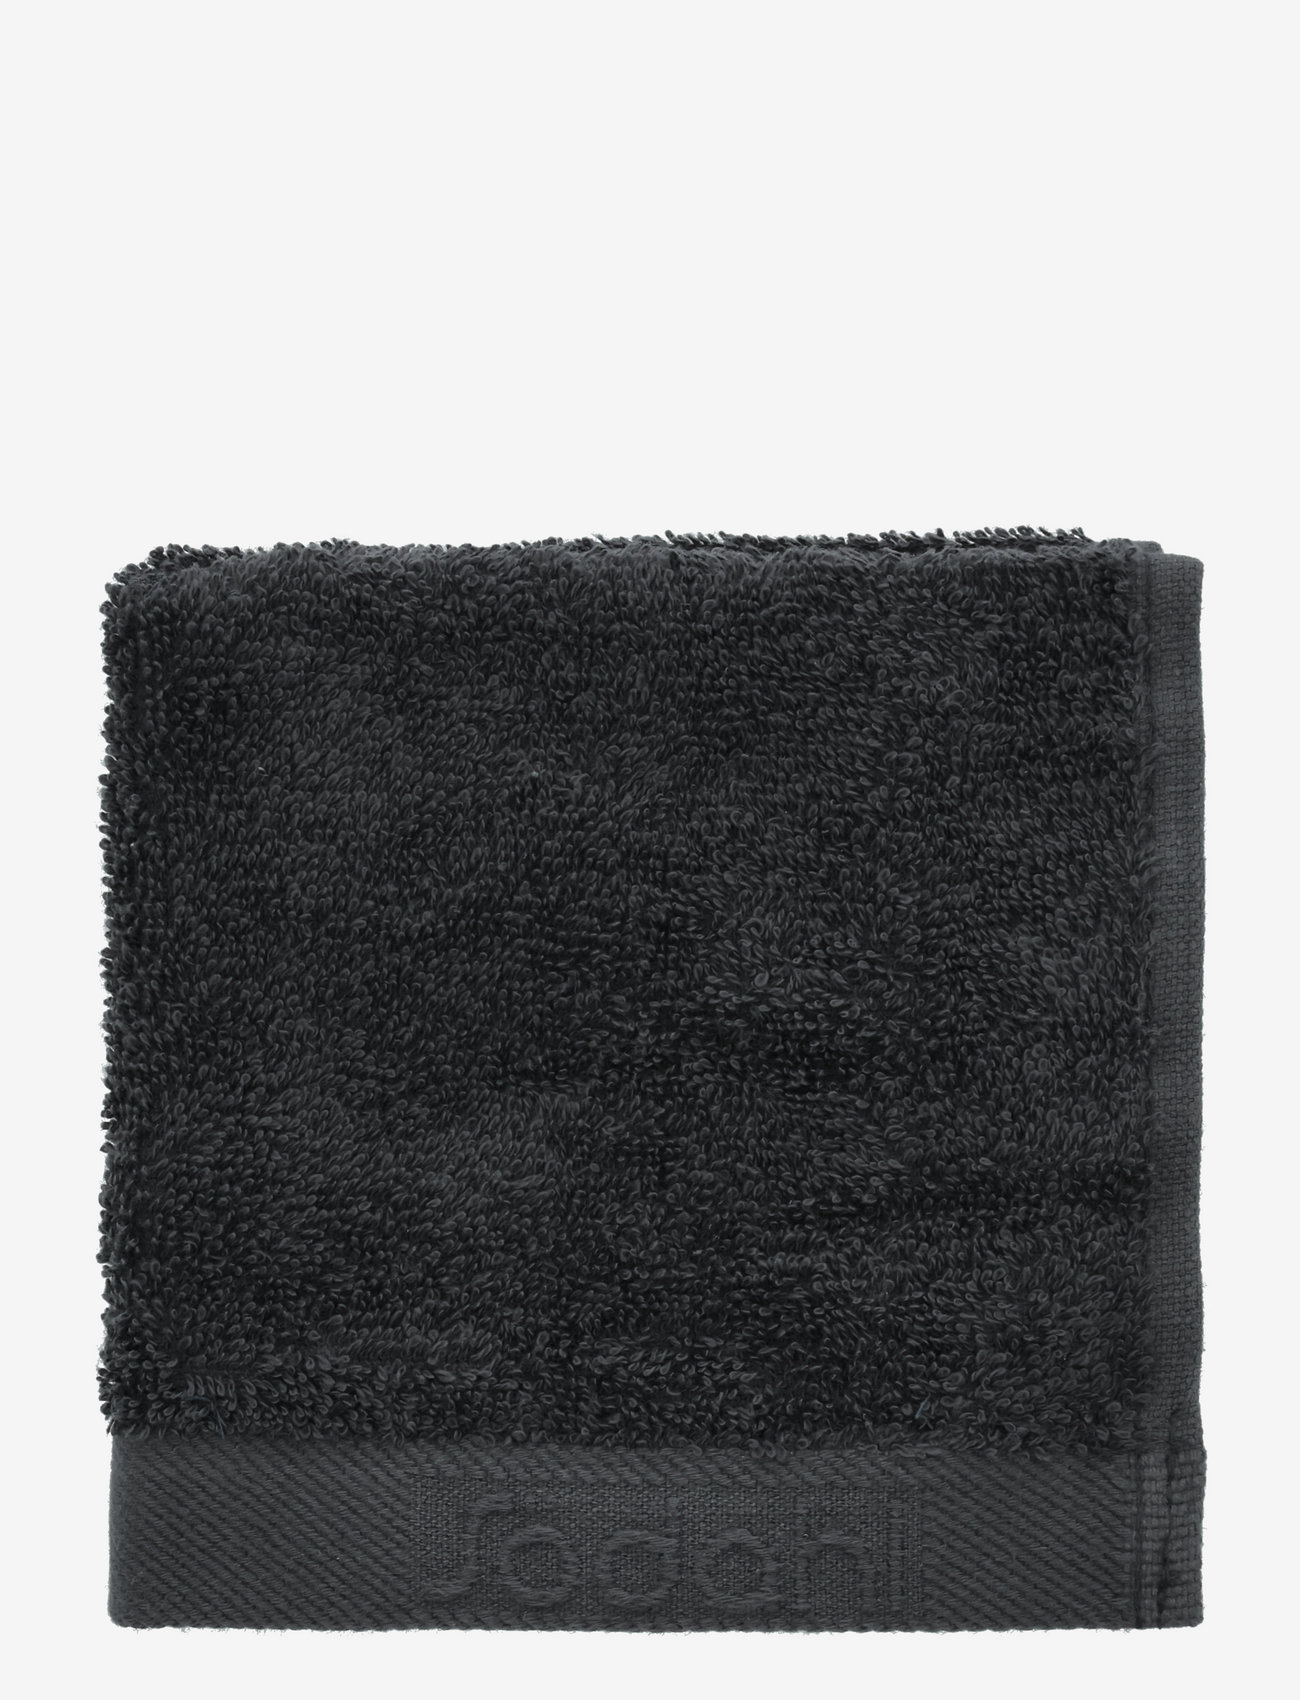 Södahl - Wash cloth Comfort O - laagste prijzen - black - 1